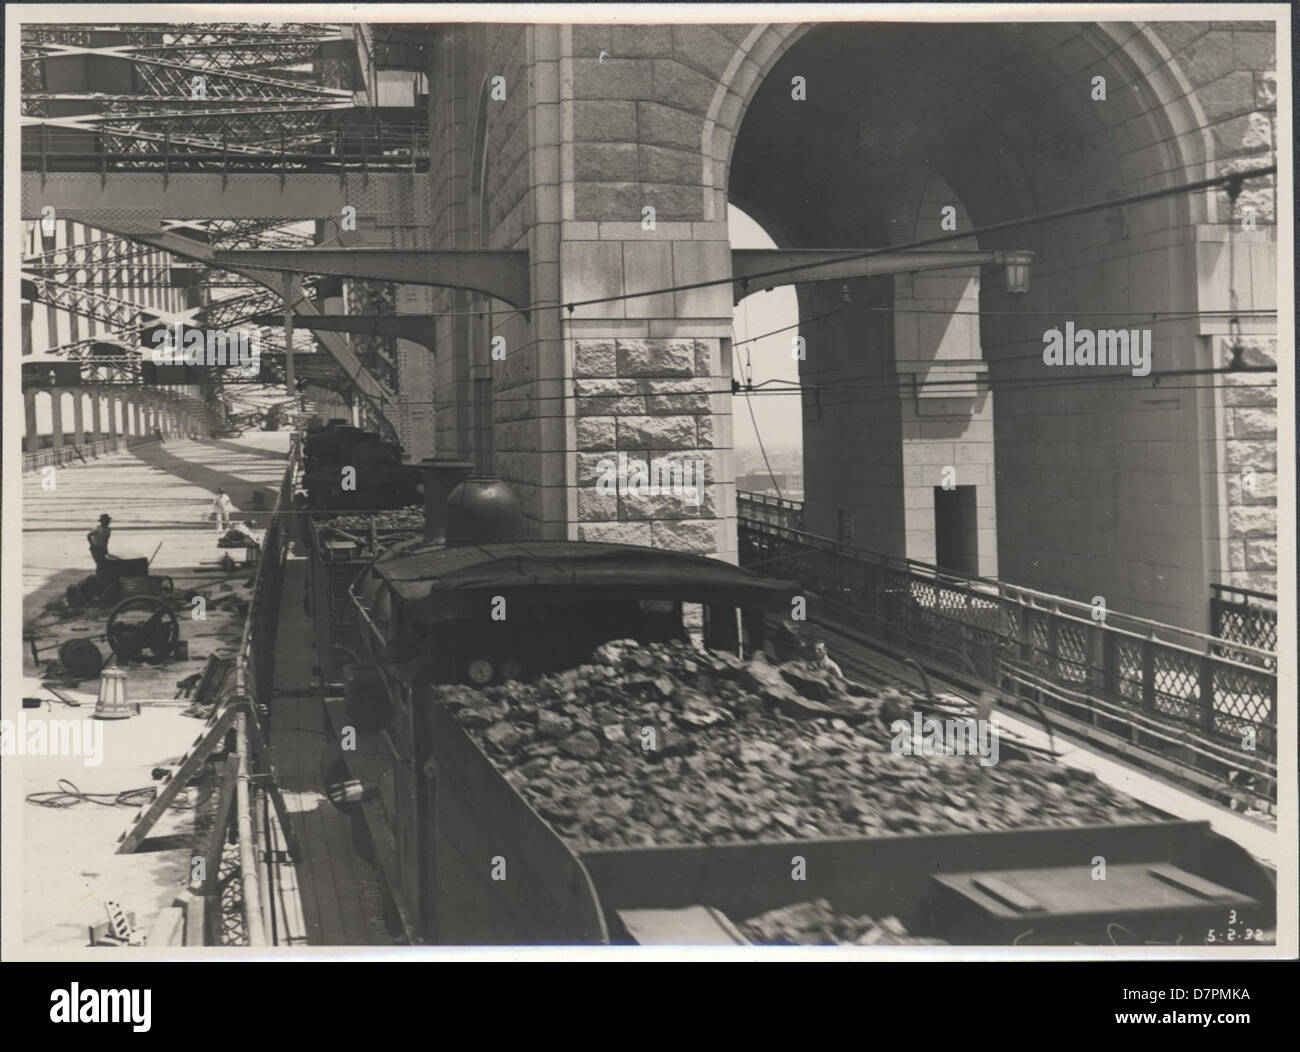 87/1353-152tirage photographique, train à vapeur sur le Harbour Bridge, l'argent / gélatine / papier, photographie de la Nouvelle Galles du sud Ministère des Travaux publics, Sydney, Australie, Février, 1932 Banque D'Images